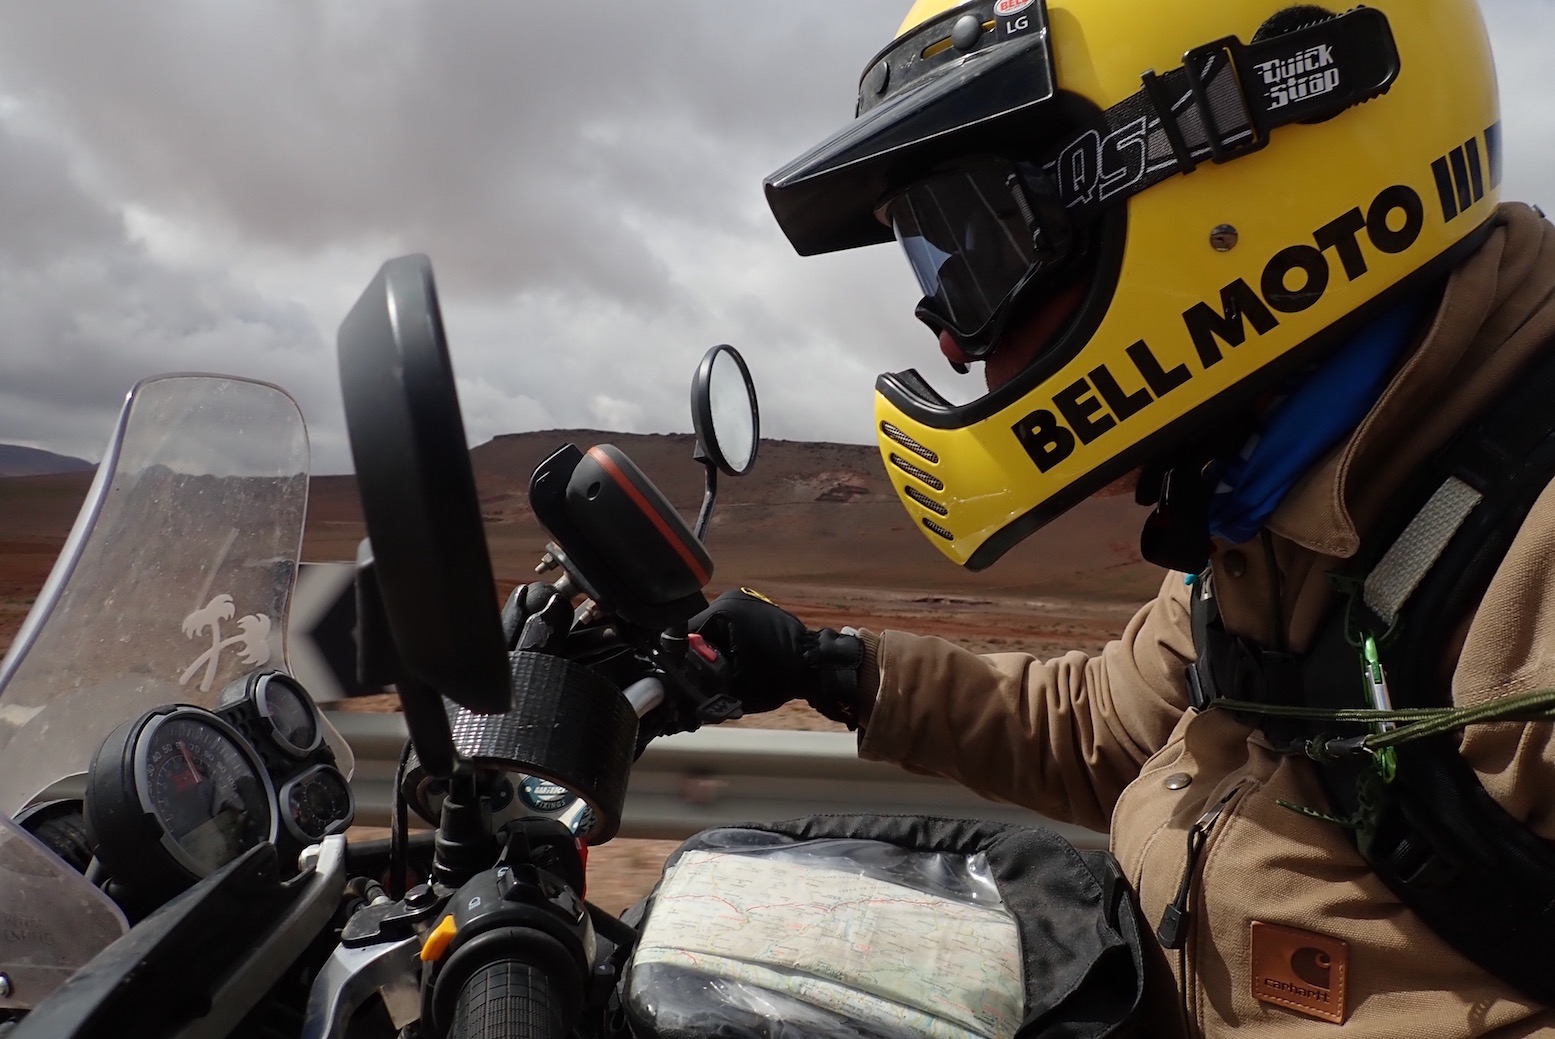 New Bell Motorcycle Helmet